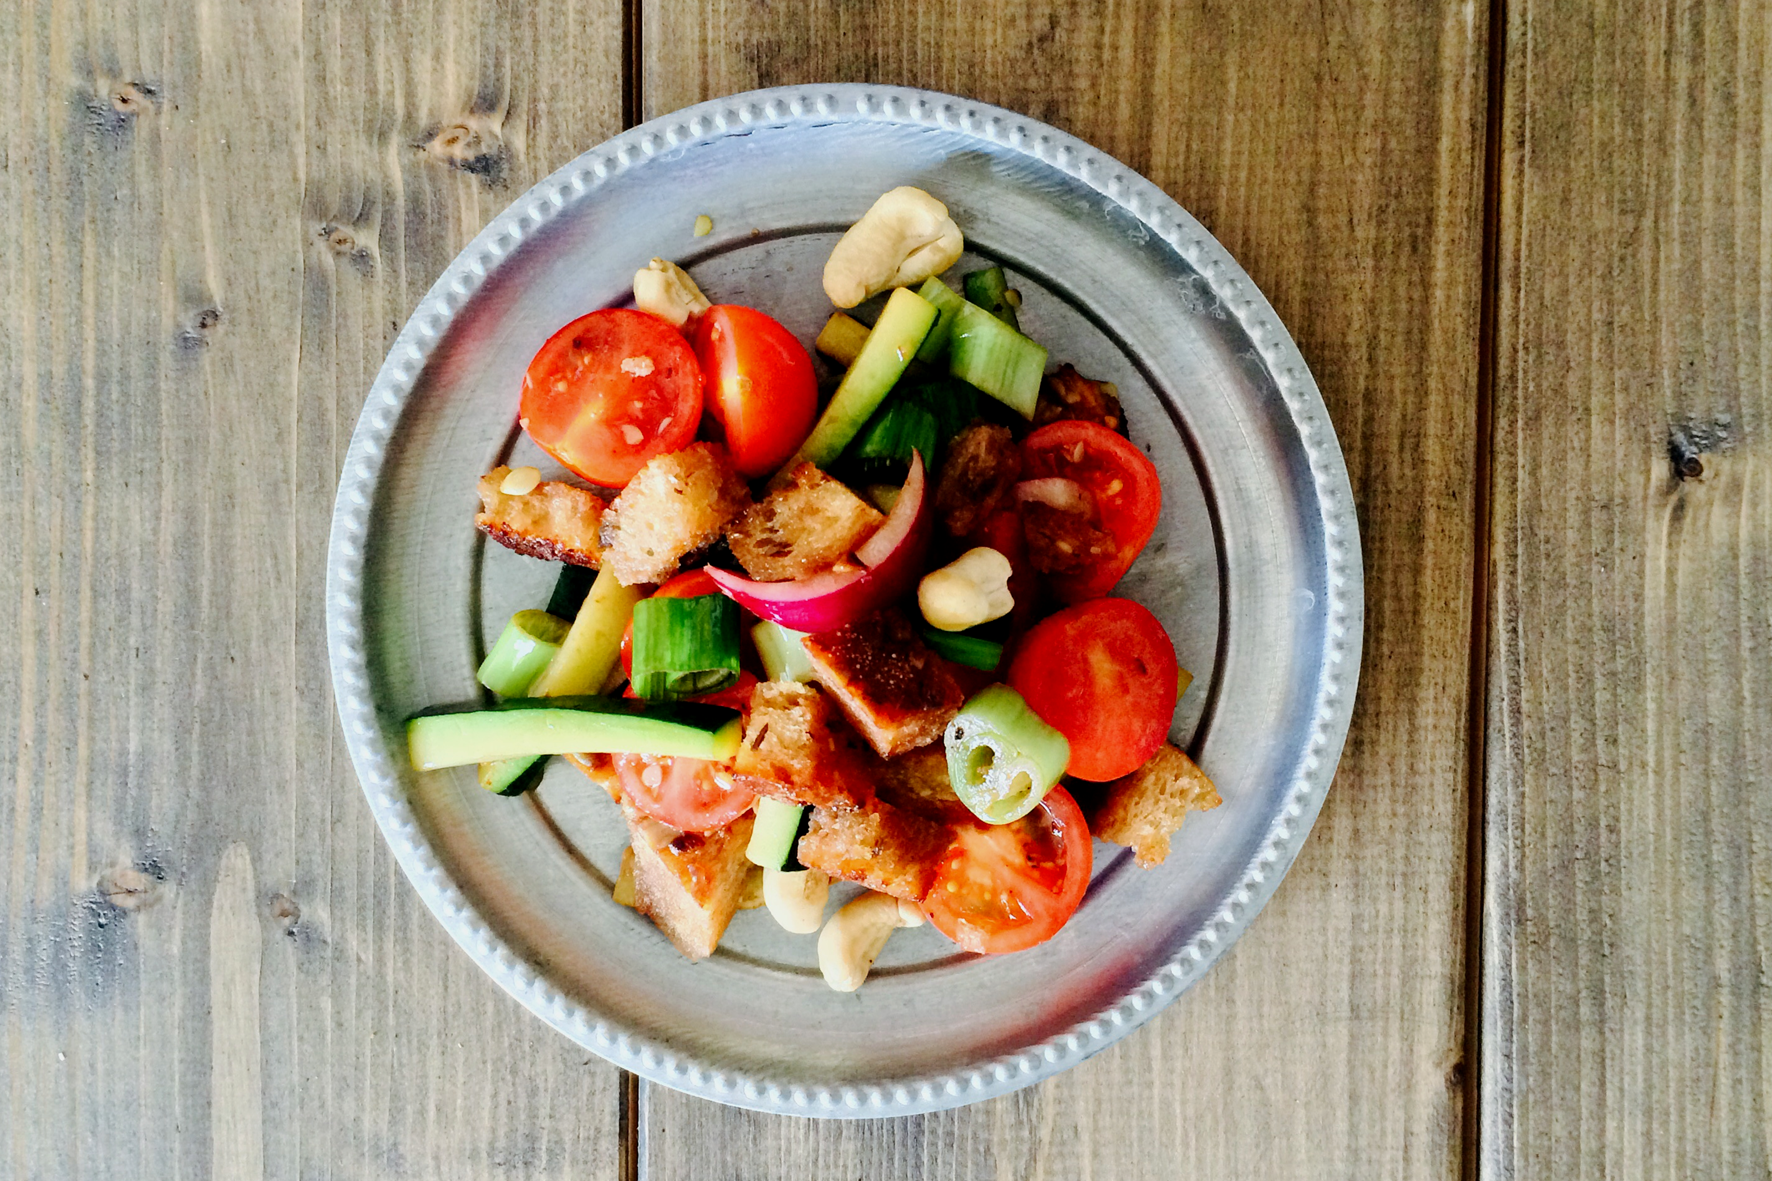 “Panzanella” – tomato & bread salad